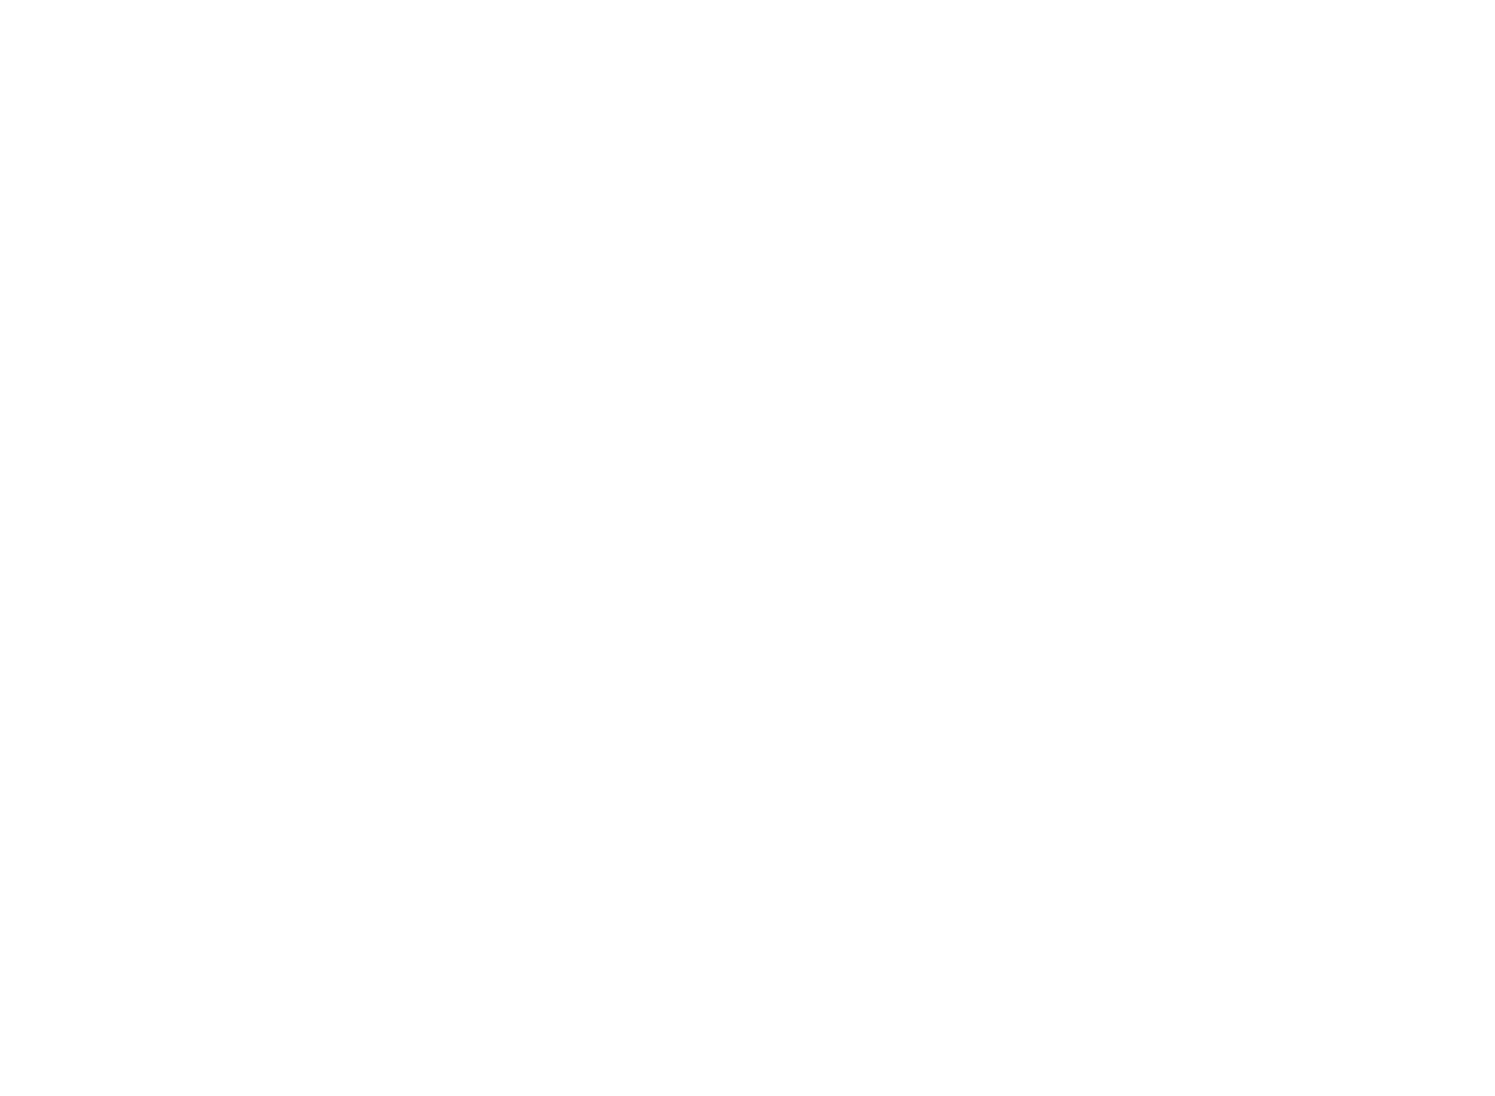 Complete Solaria logo pour fonds sombres (PNG transparent)